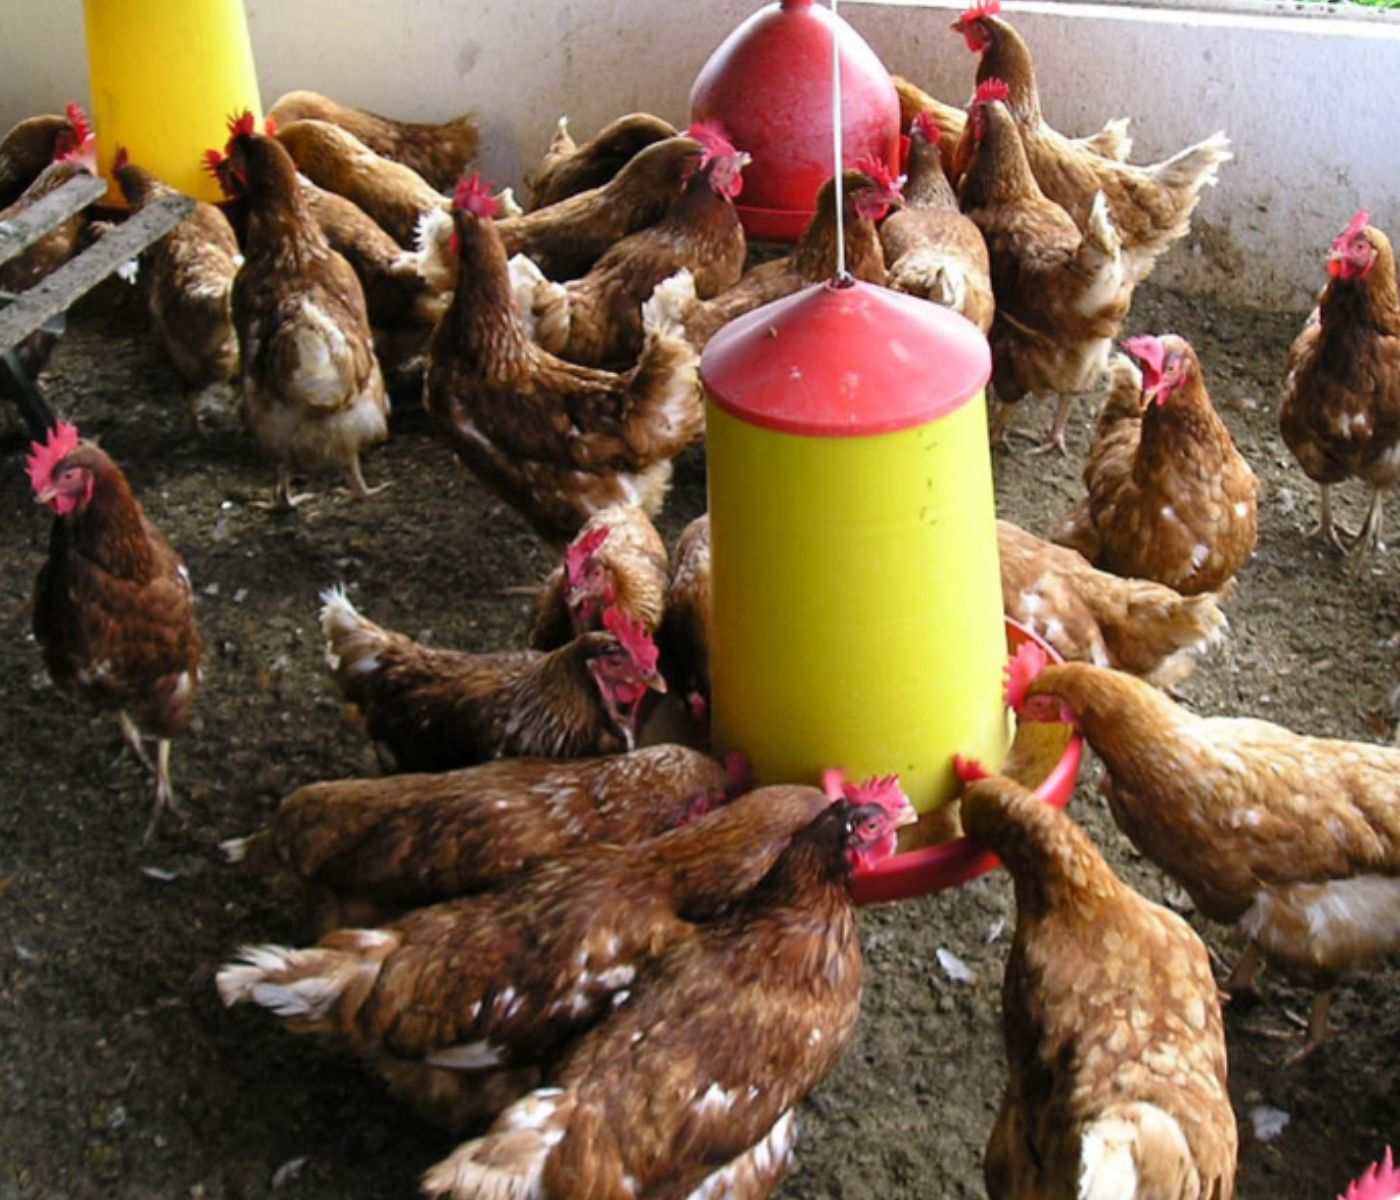 El orégano: ¿Una alternativa natural para controlar la Salmonella en gallinas ponedoras?